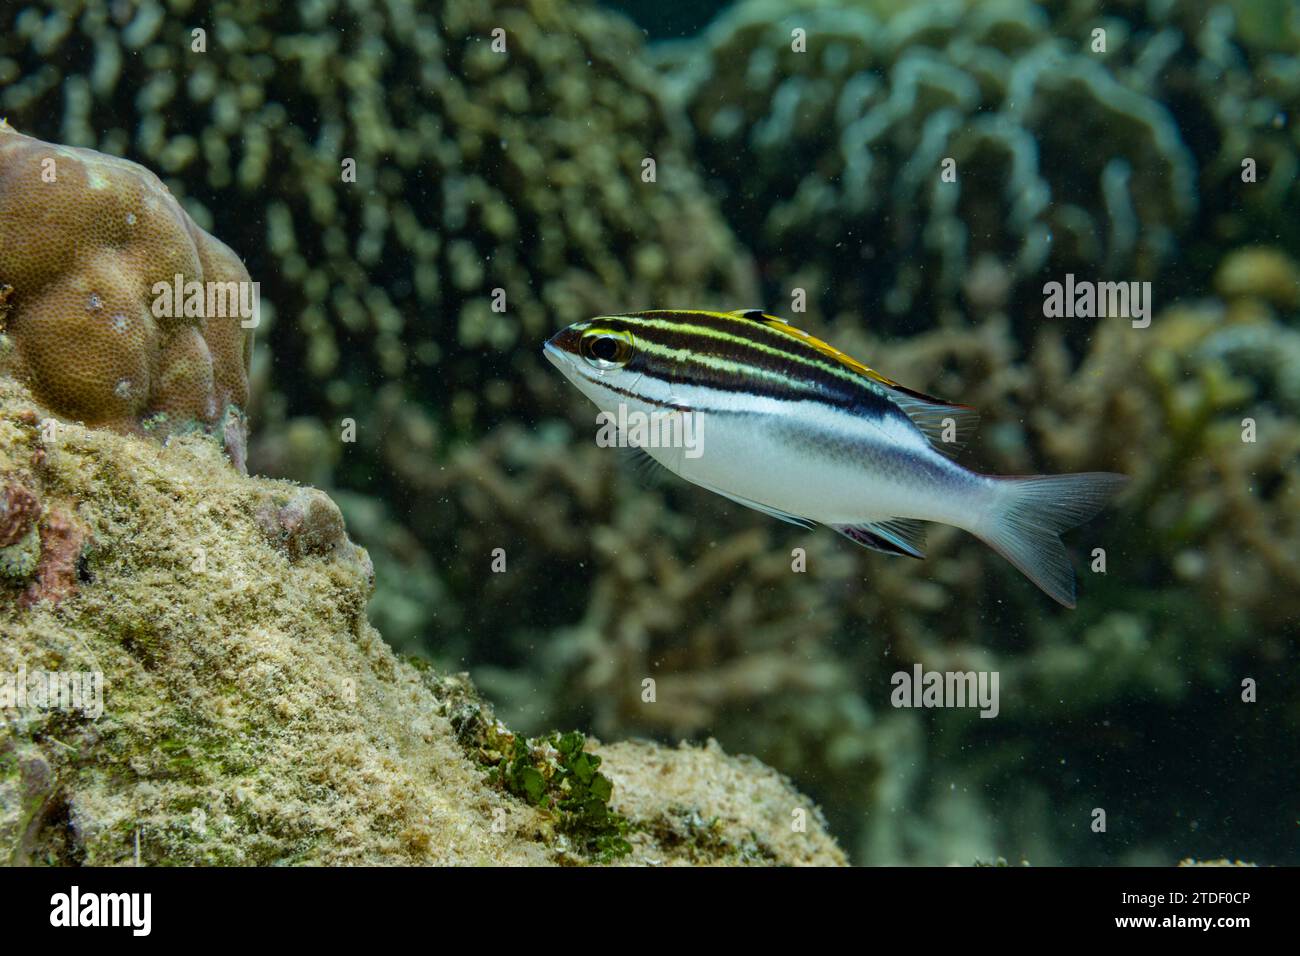 Un'orata monocle con briglia adulta (Scolopsis bilineata), al largo della barriera corallina sull'isola di Bangka, vicino a Manado, Indonesia, Sud-est asiatico Foto Stock